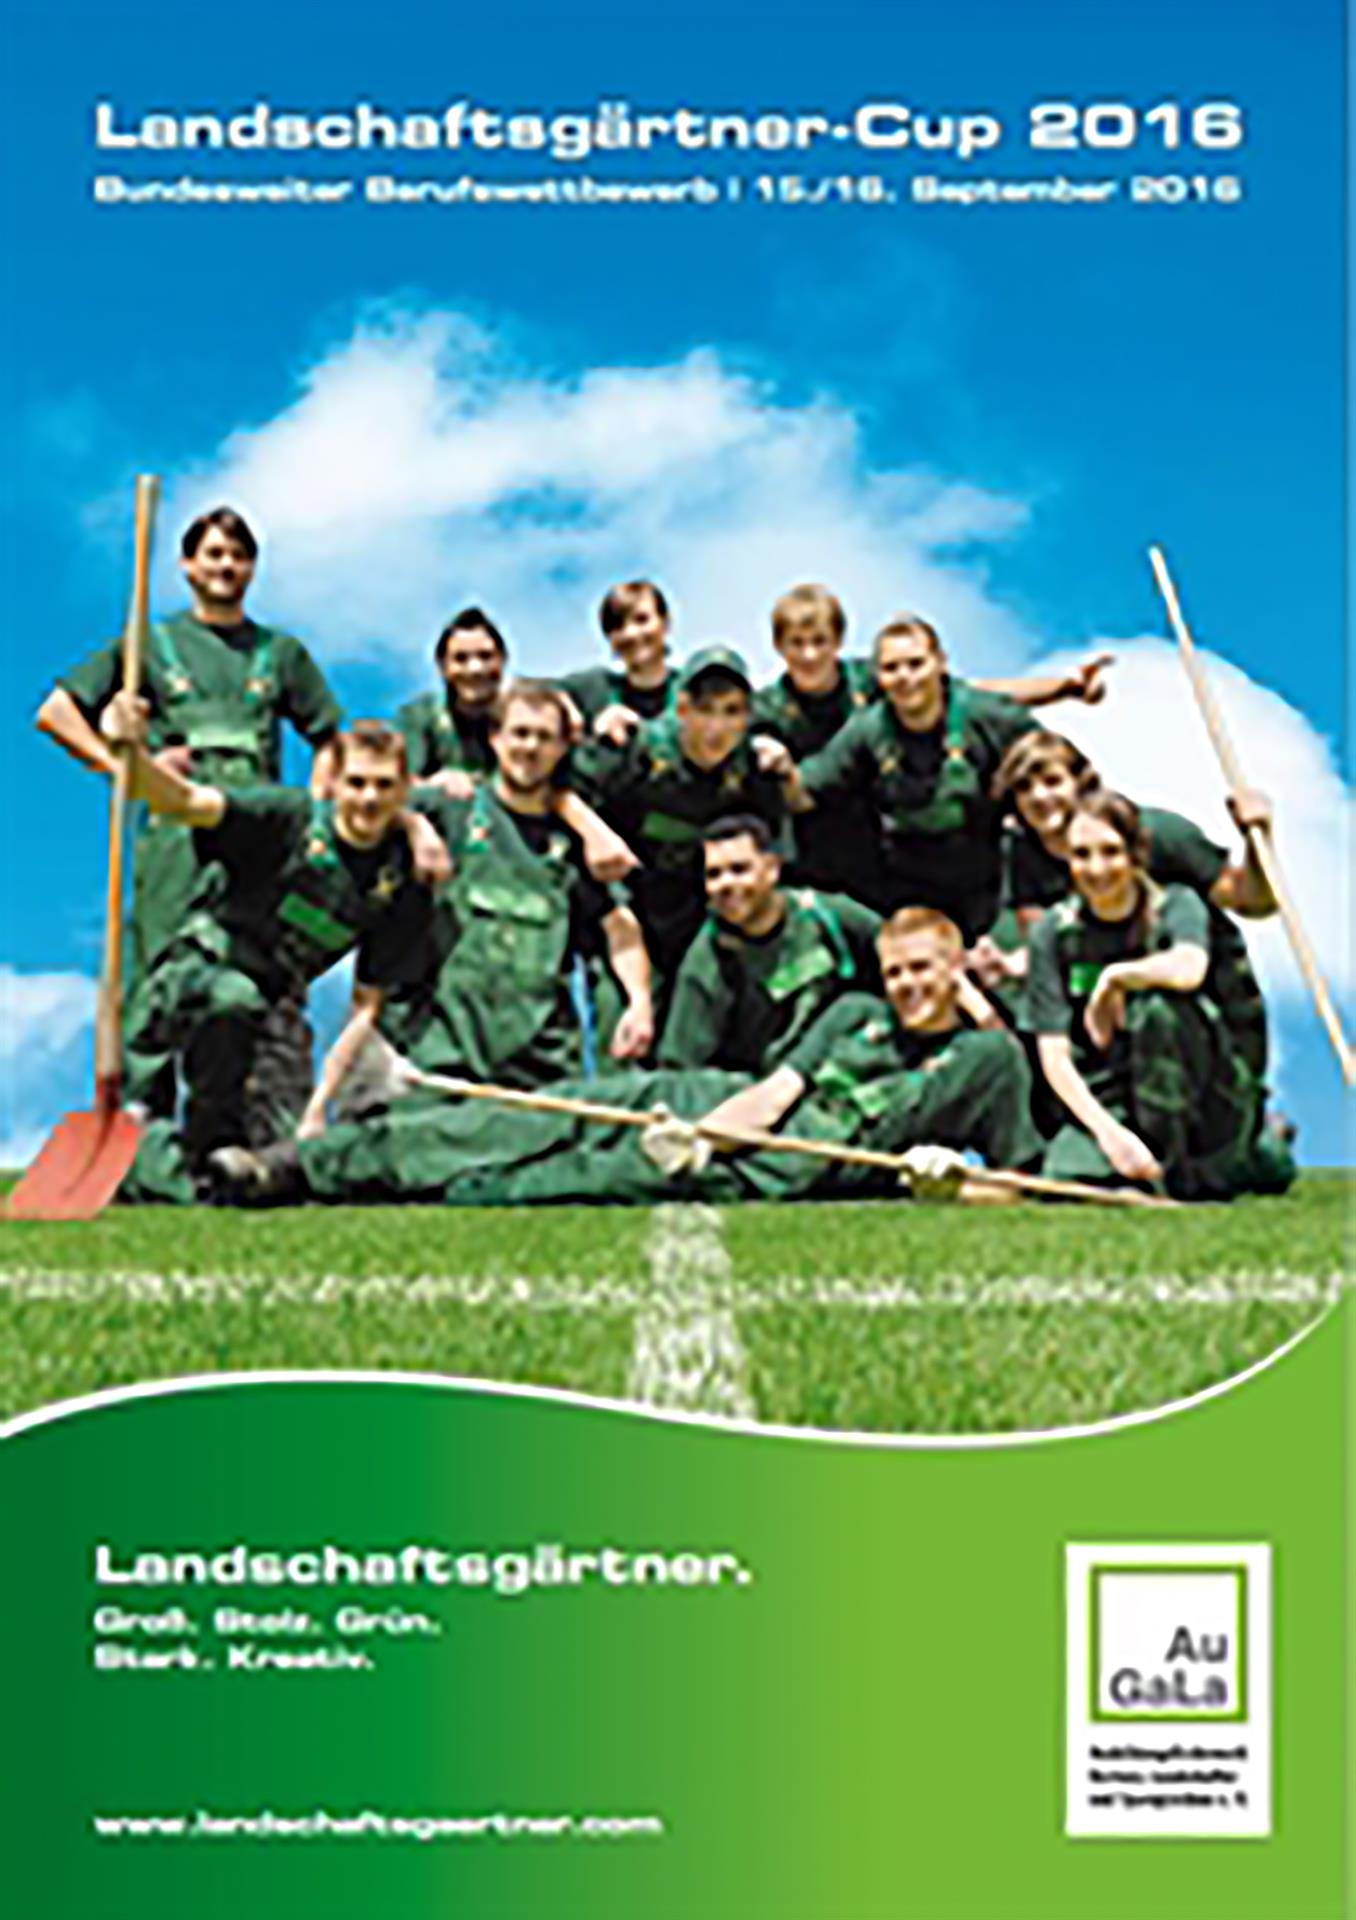 Wettbewerbsbroschüre Landschaftsgärtner-Cup 2016.